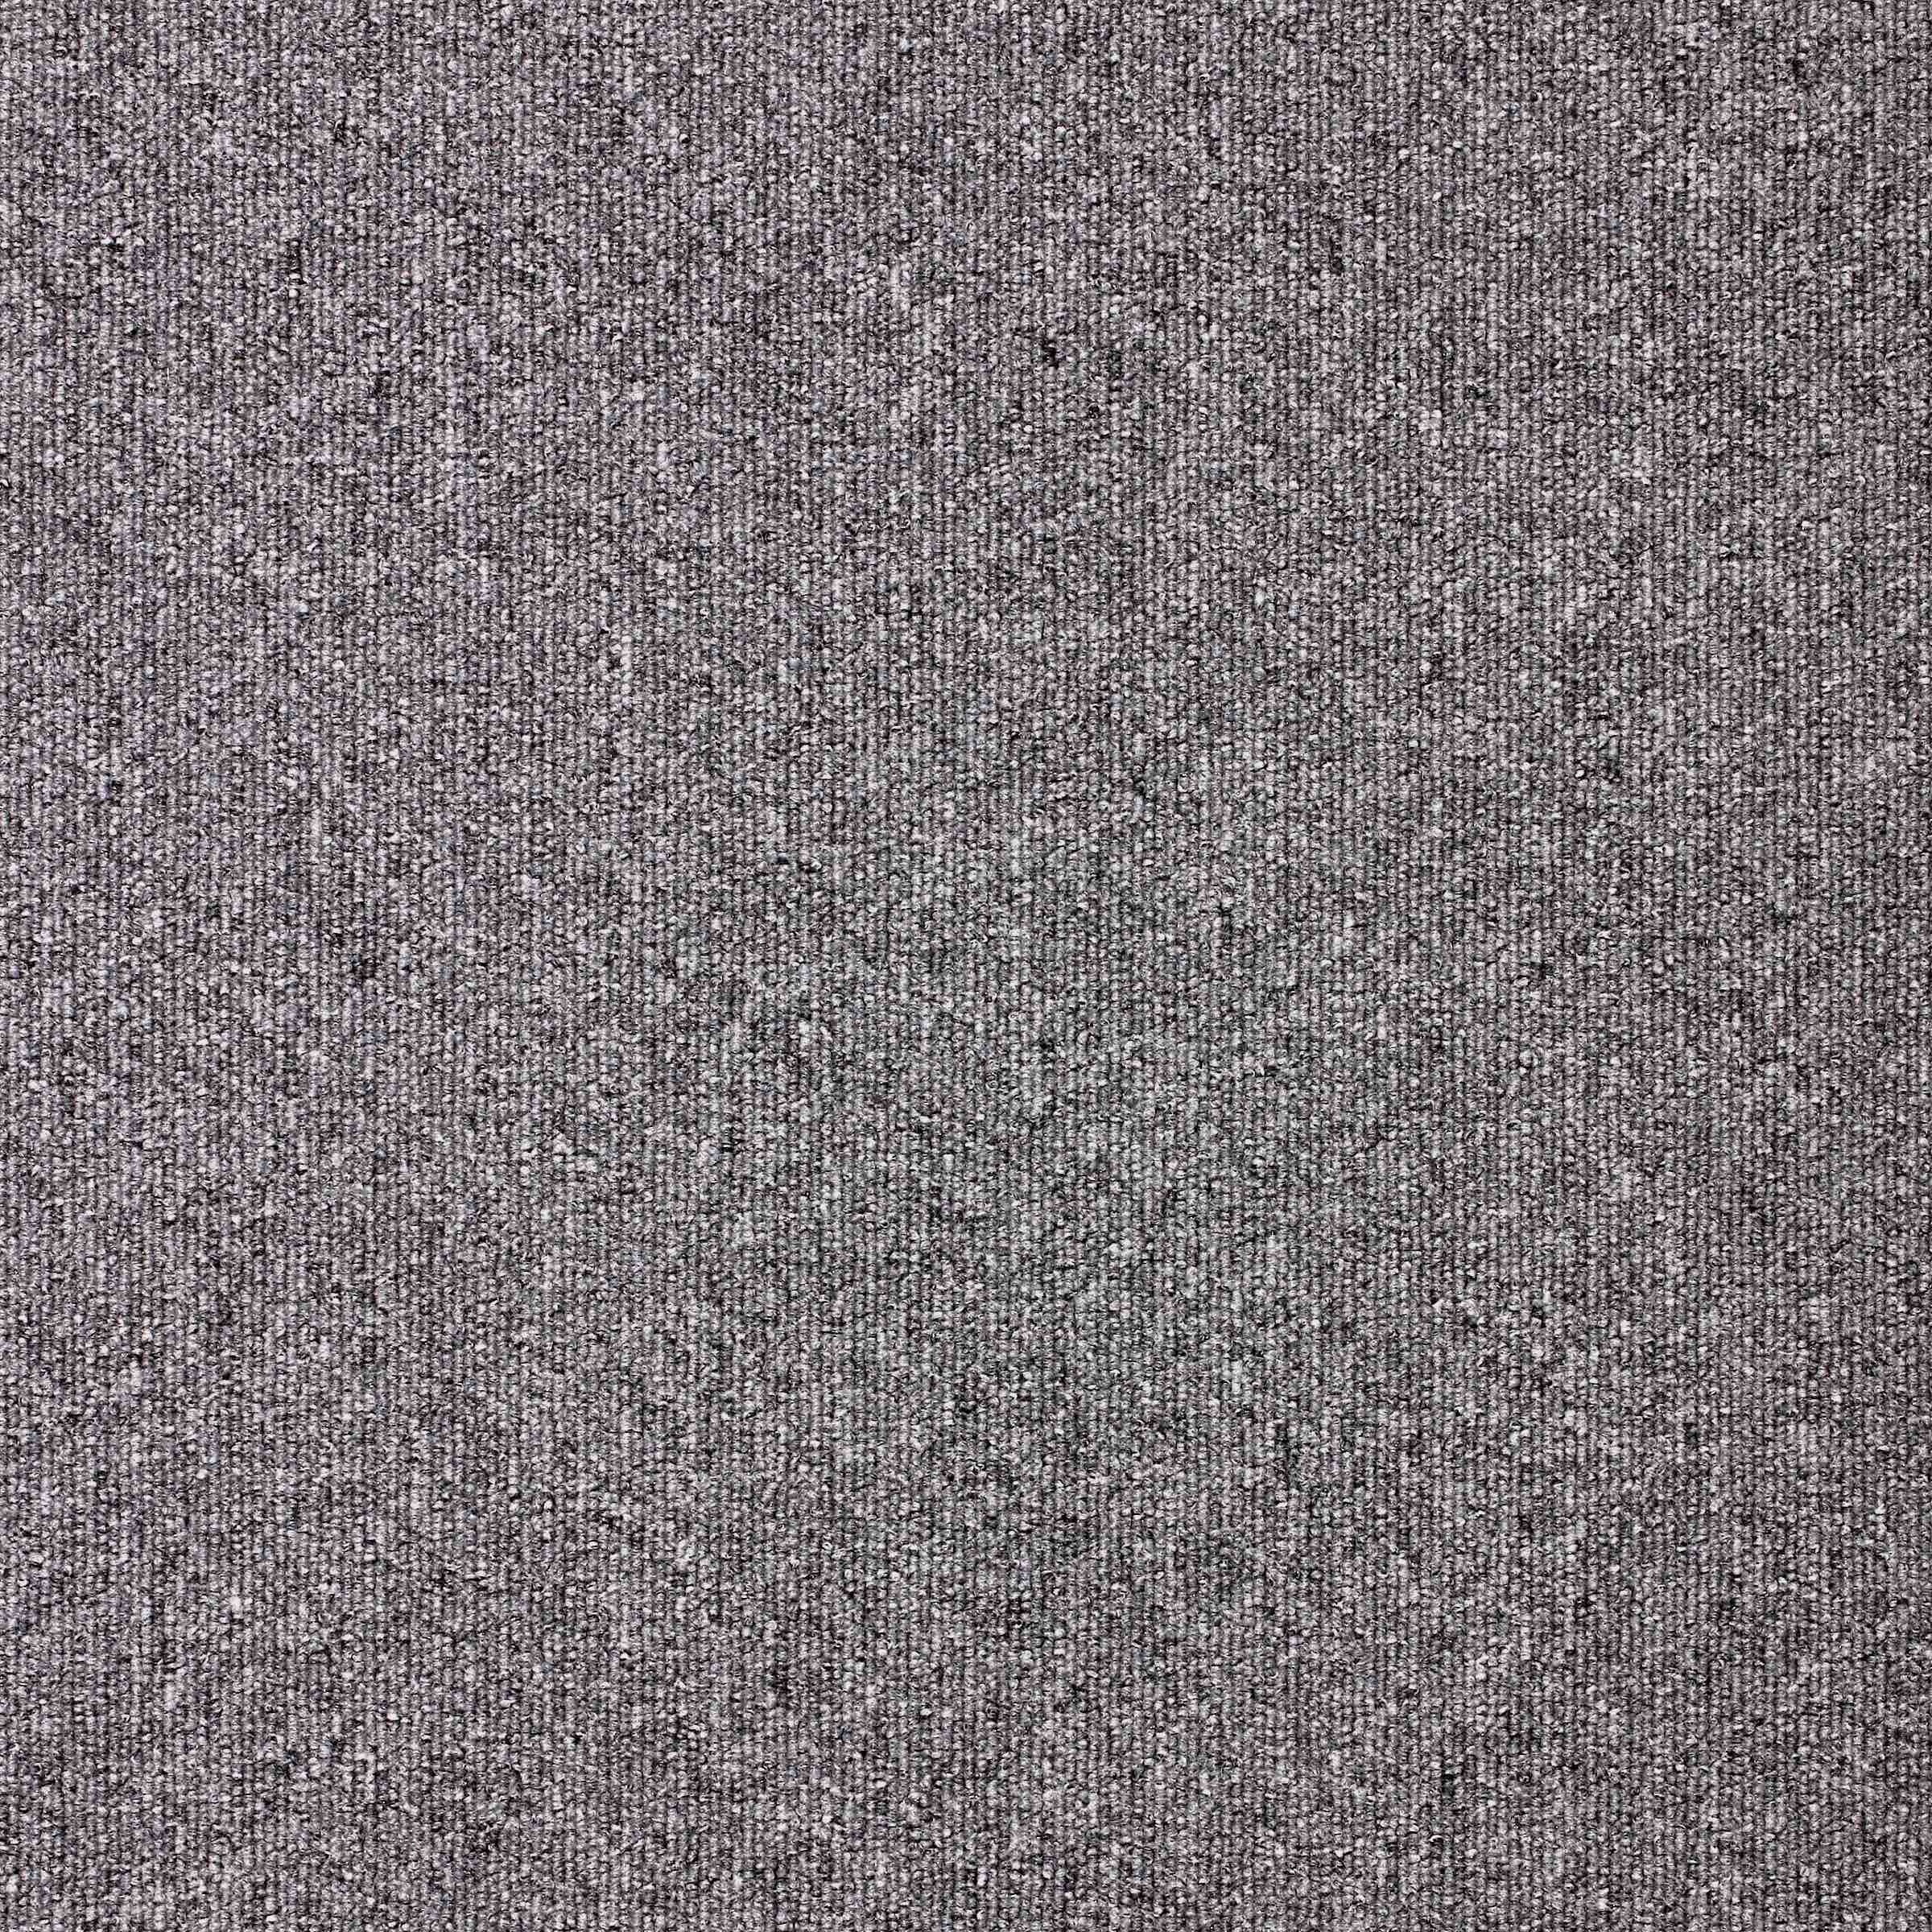 Paragon Diversity Carpet Tiles